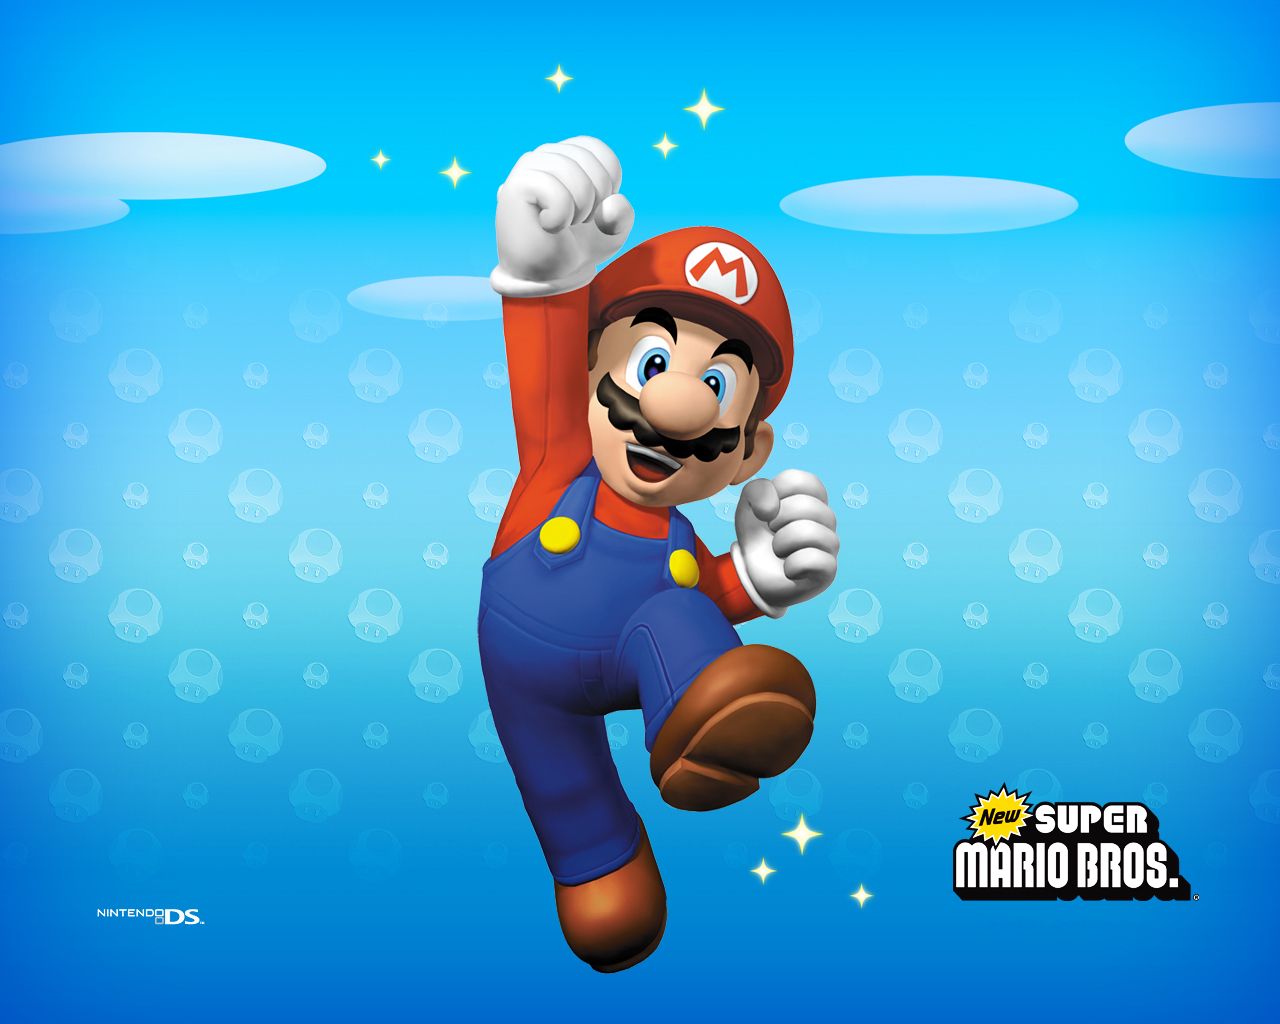 Super-Mario-Bros-New-Wallpaper.jpg